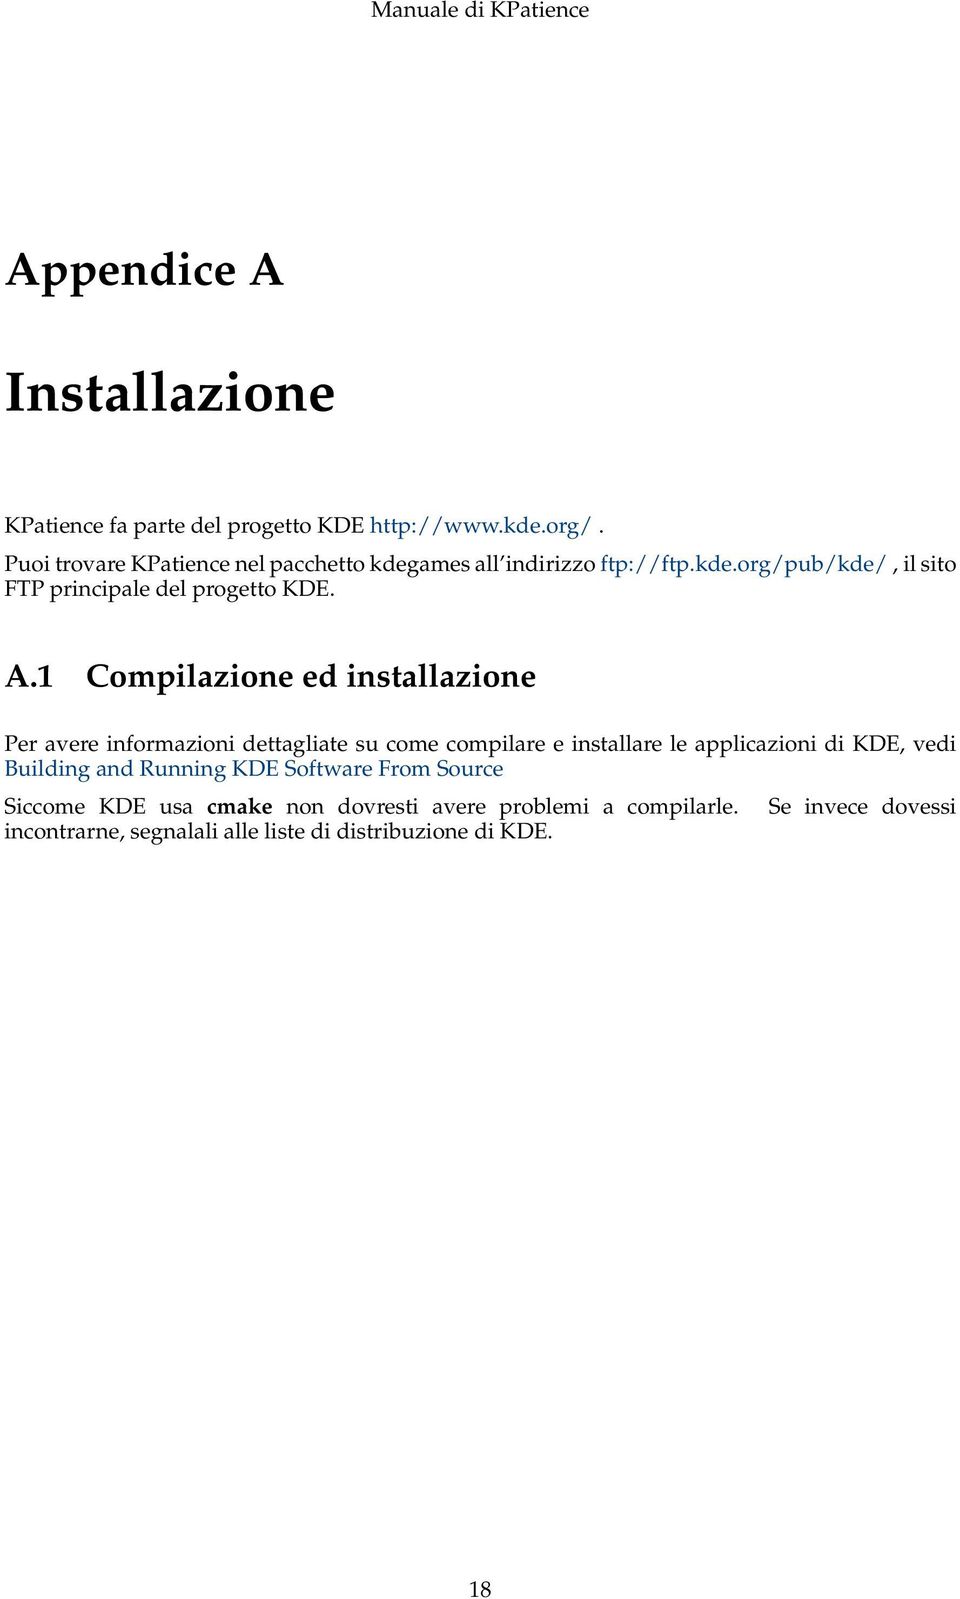 1 Compilazione ed installazione Per avere informazioni dettagliate su come compilare e installare le applicazioni di KDE, vedi